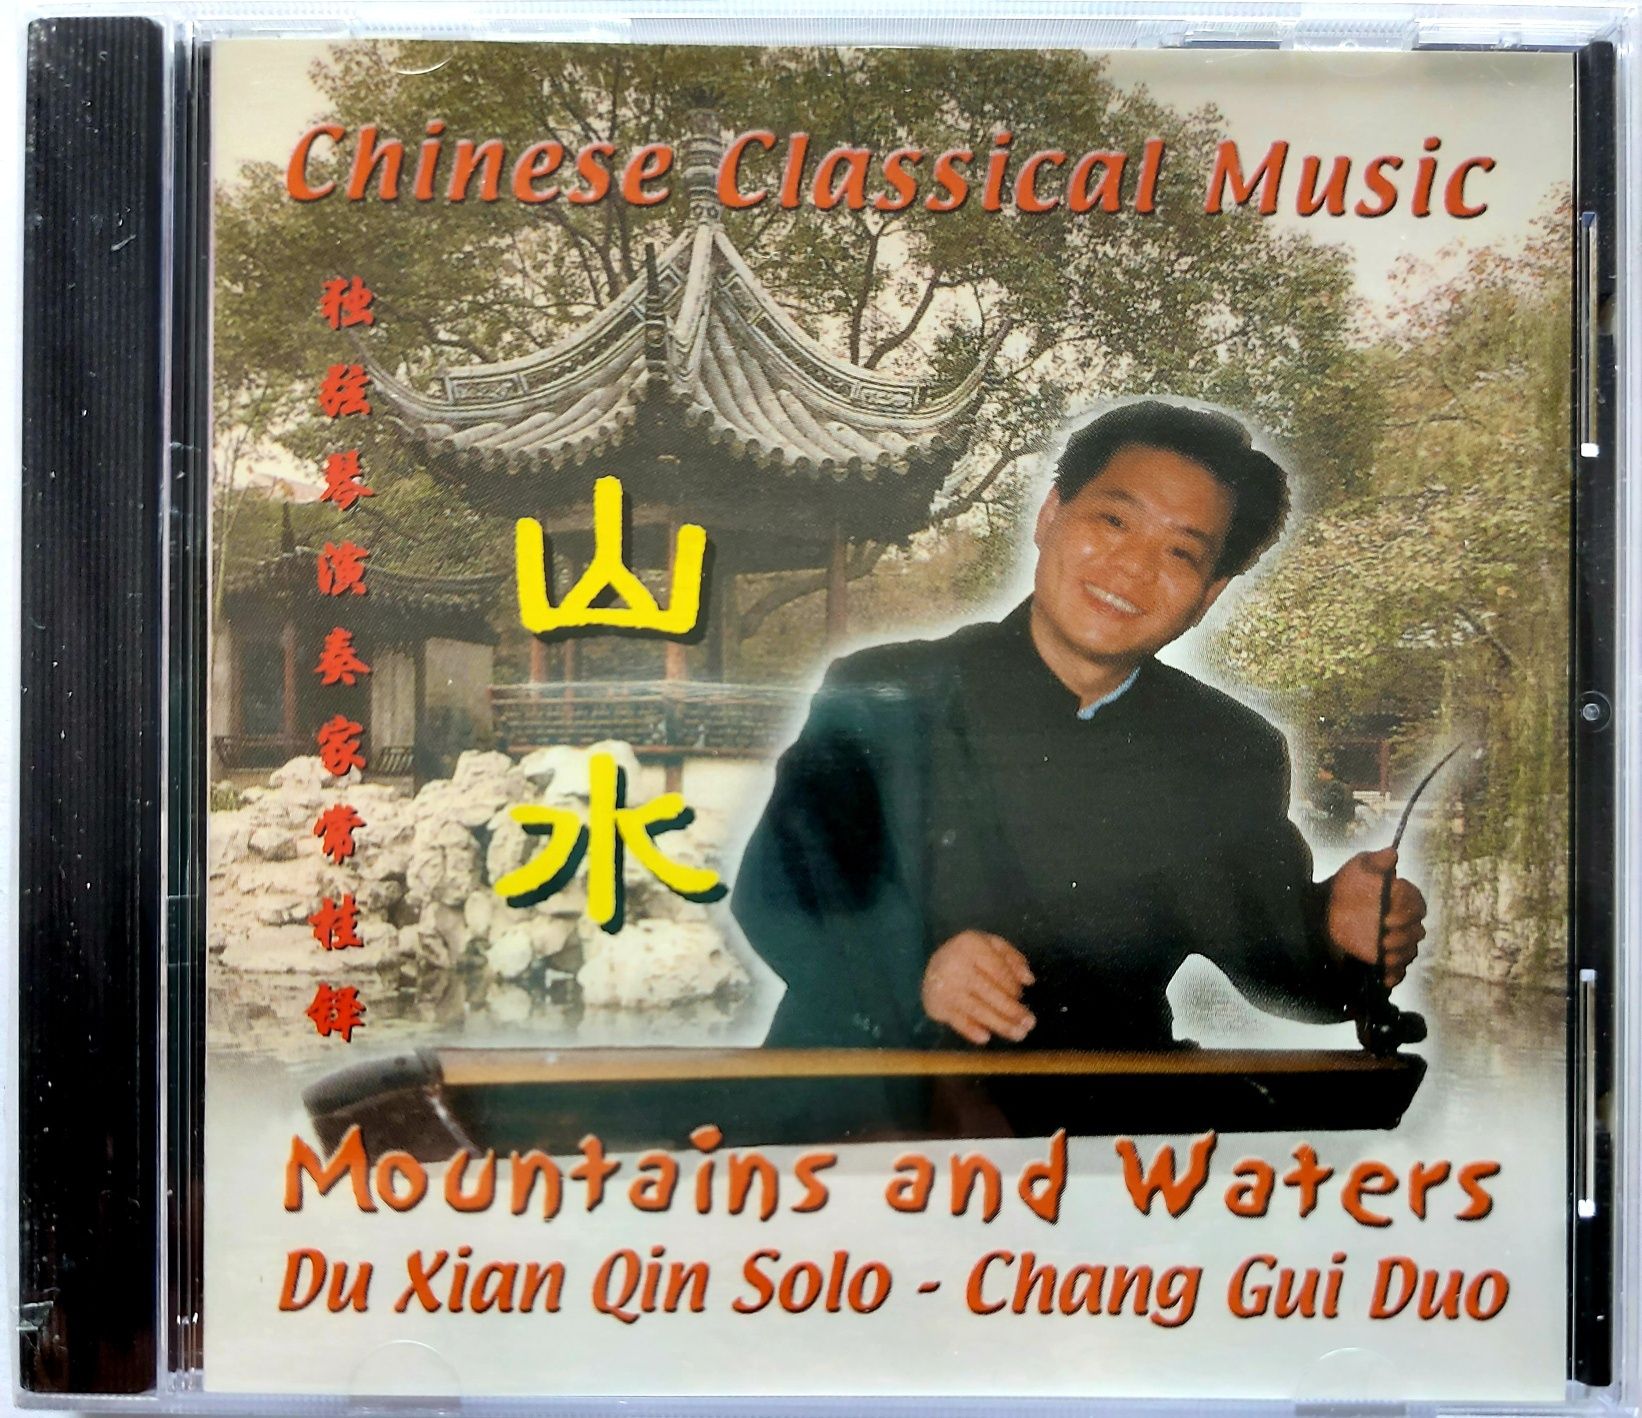 Du Xian Qin Solo Chang Gui Duo Mountains And Waters (Nowa)